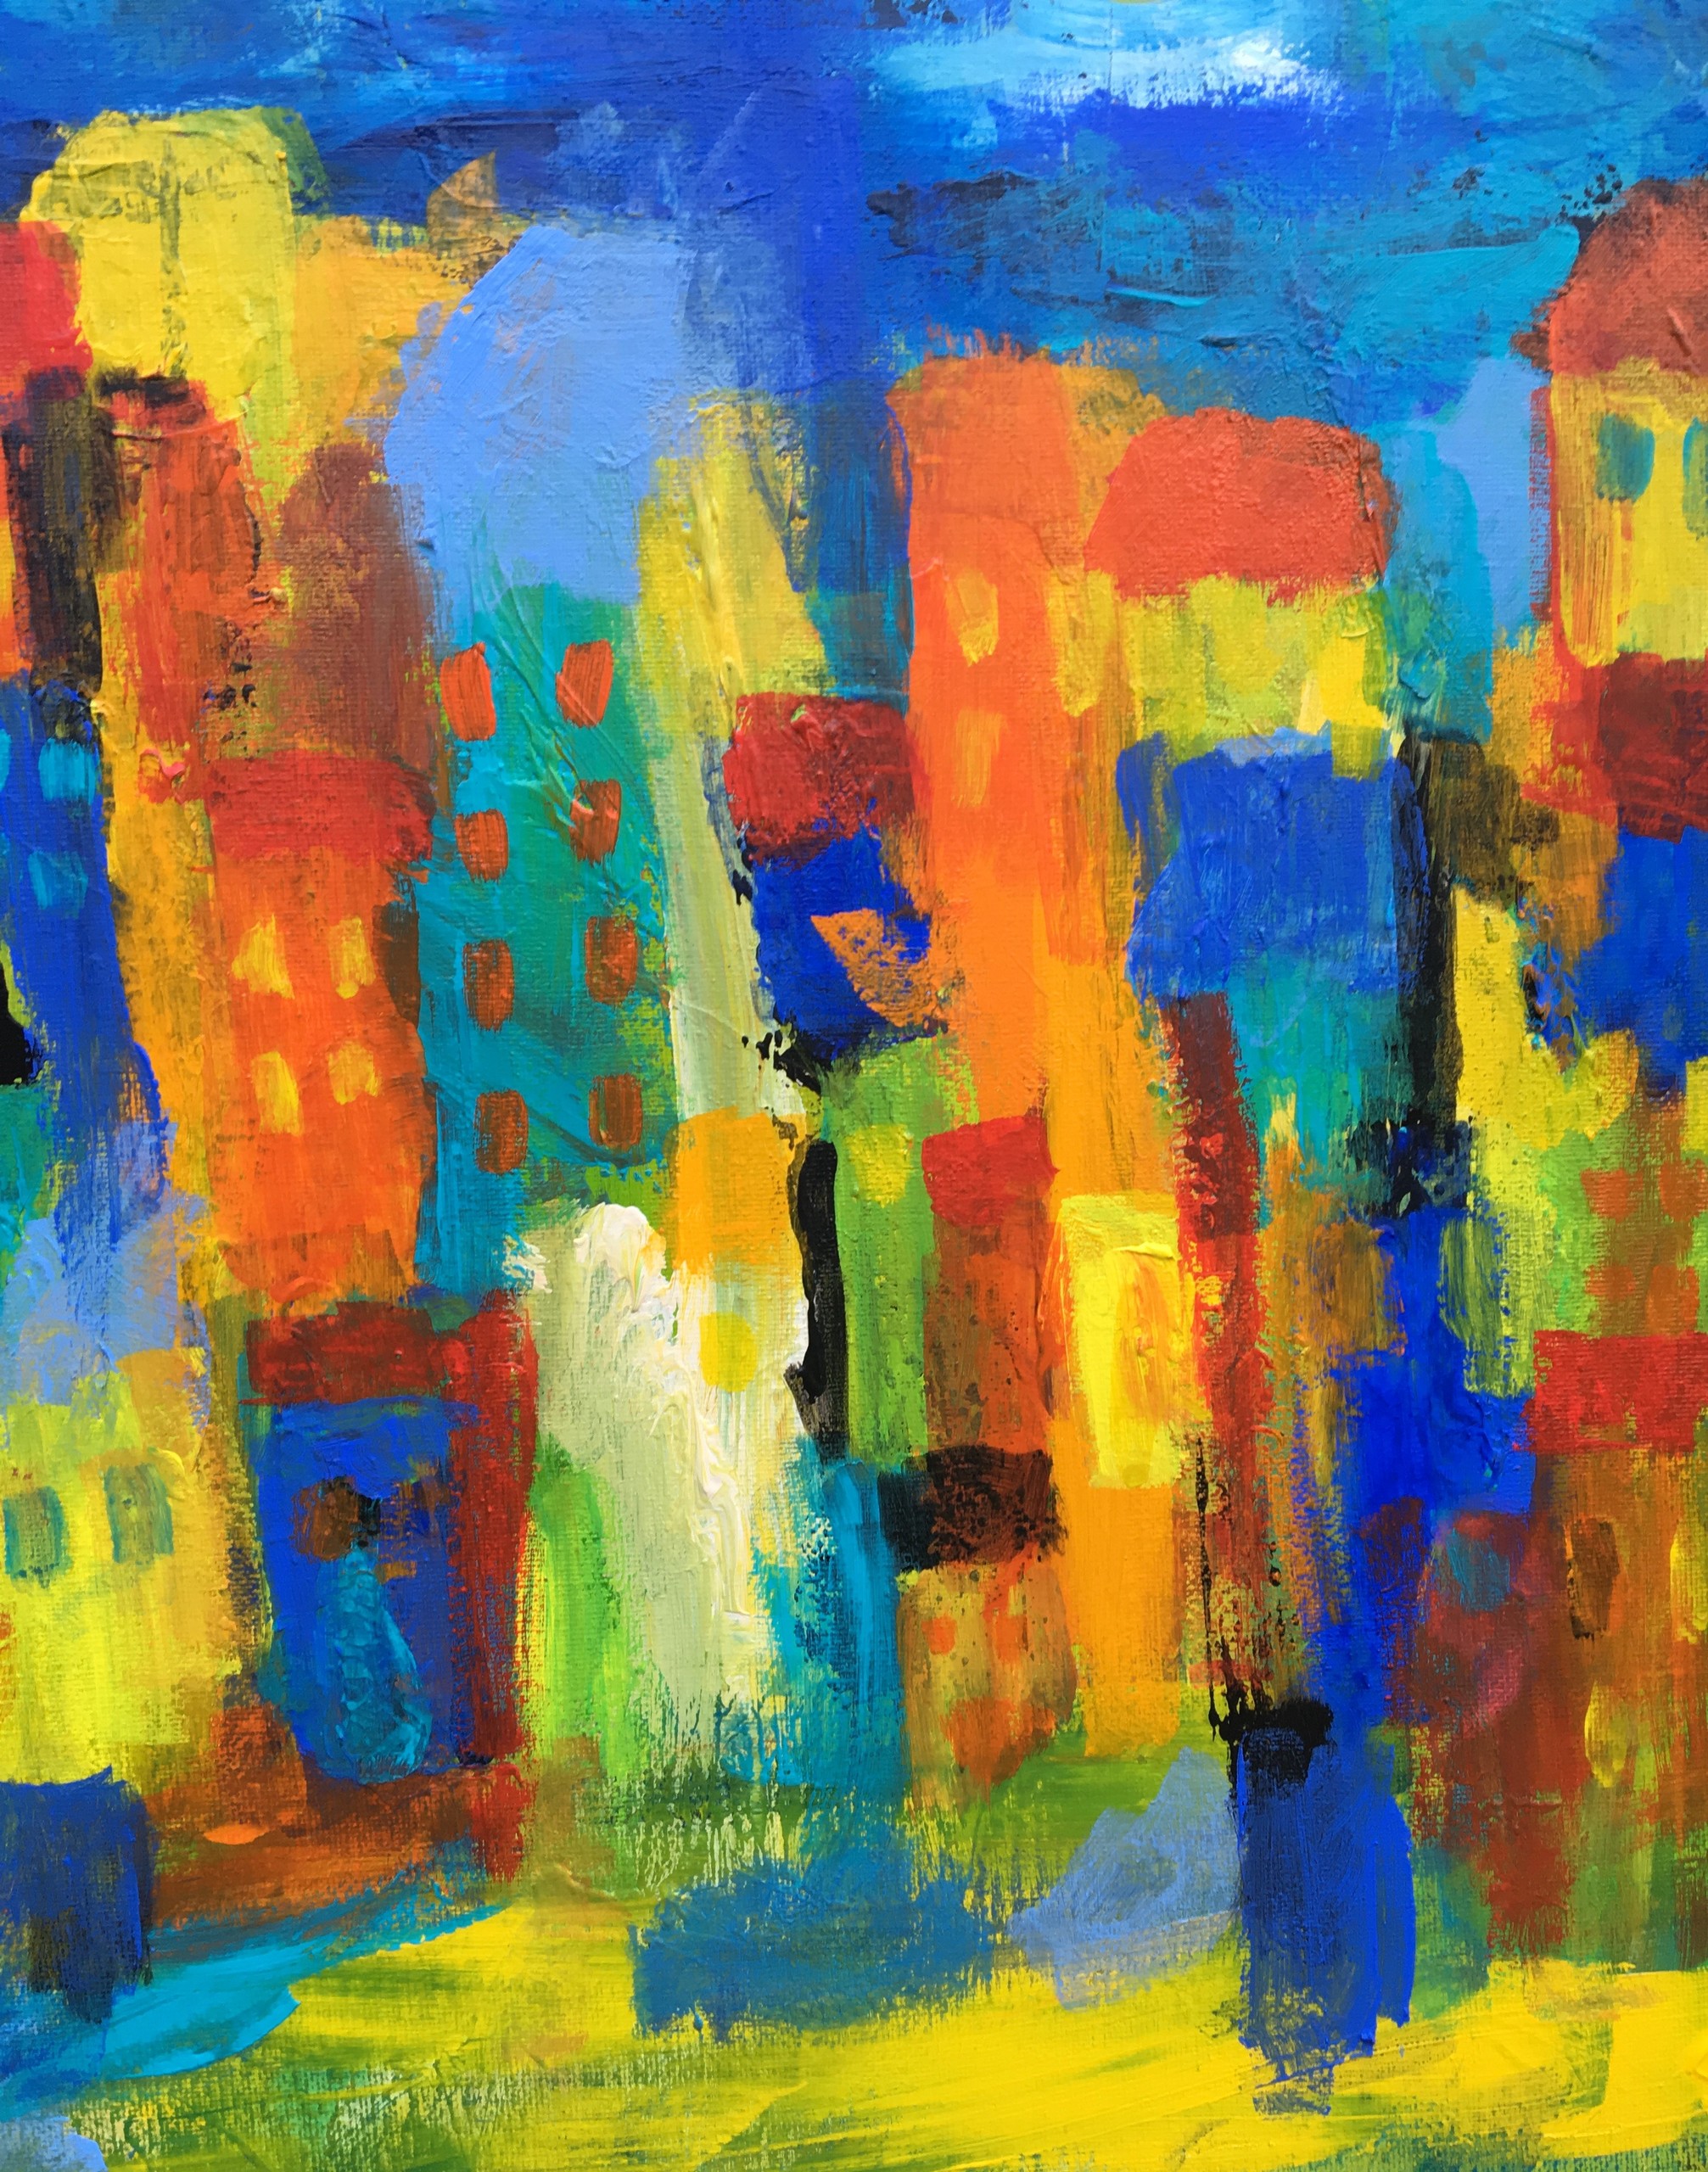 Maleri med glade huse i stærke farve giver et positivt og varm stemning.